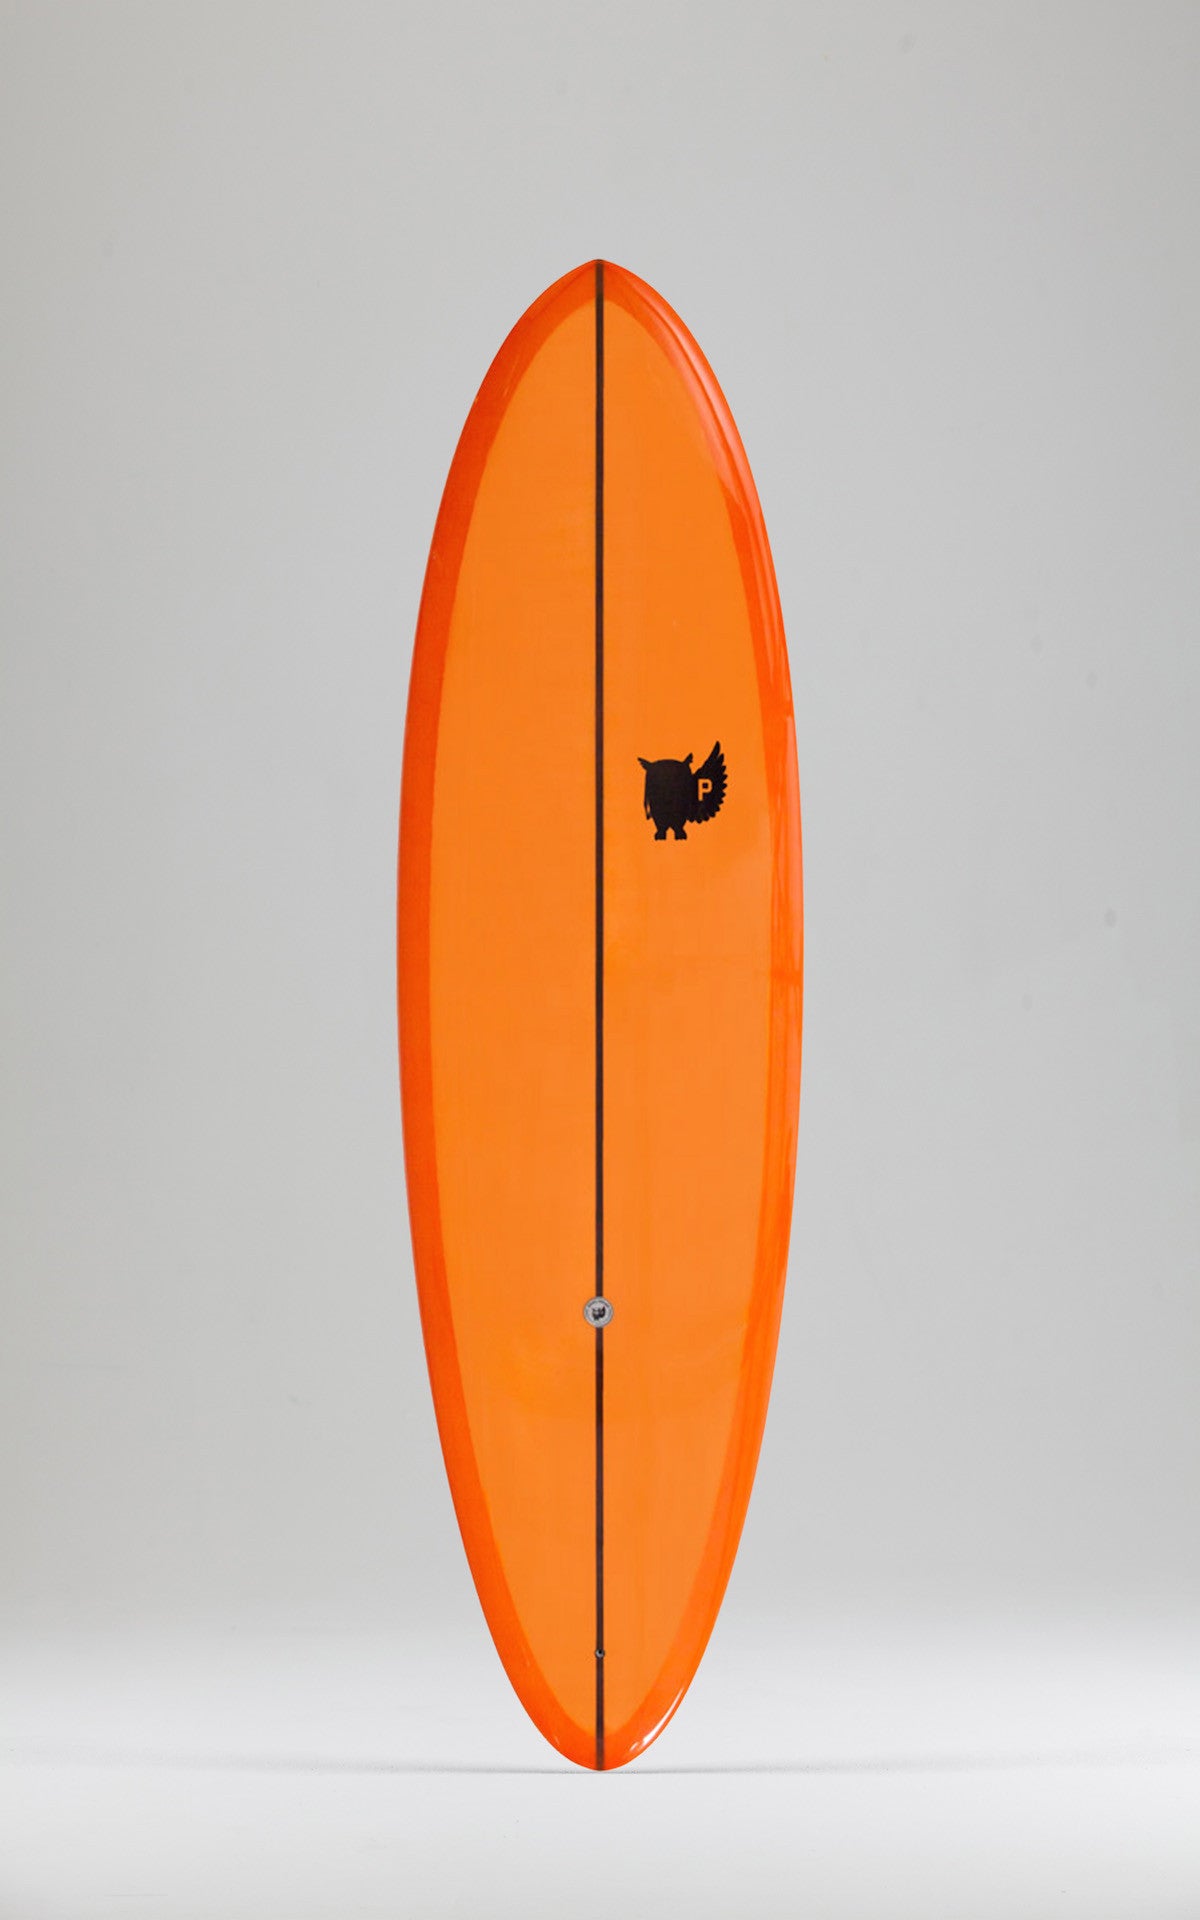 PIETY Surfboards - Round & Round